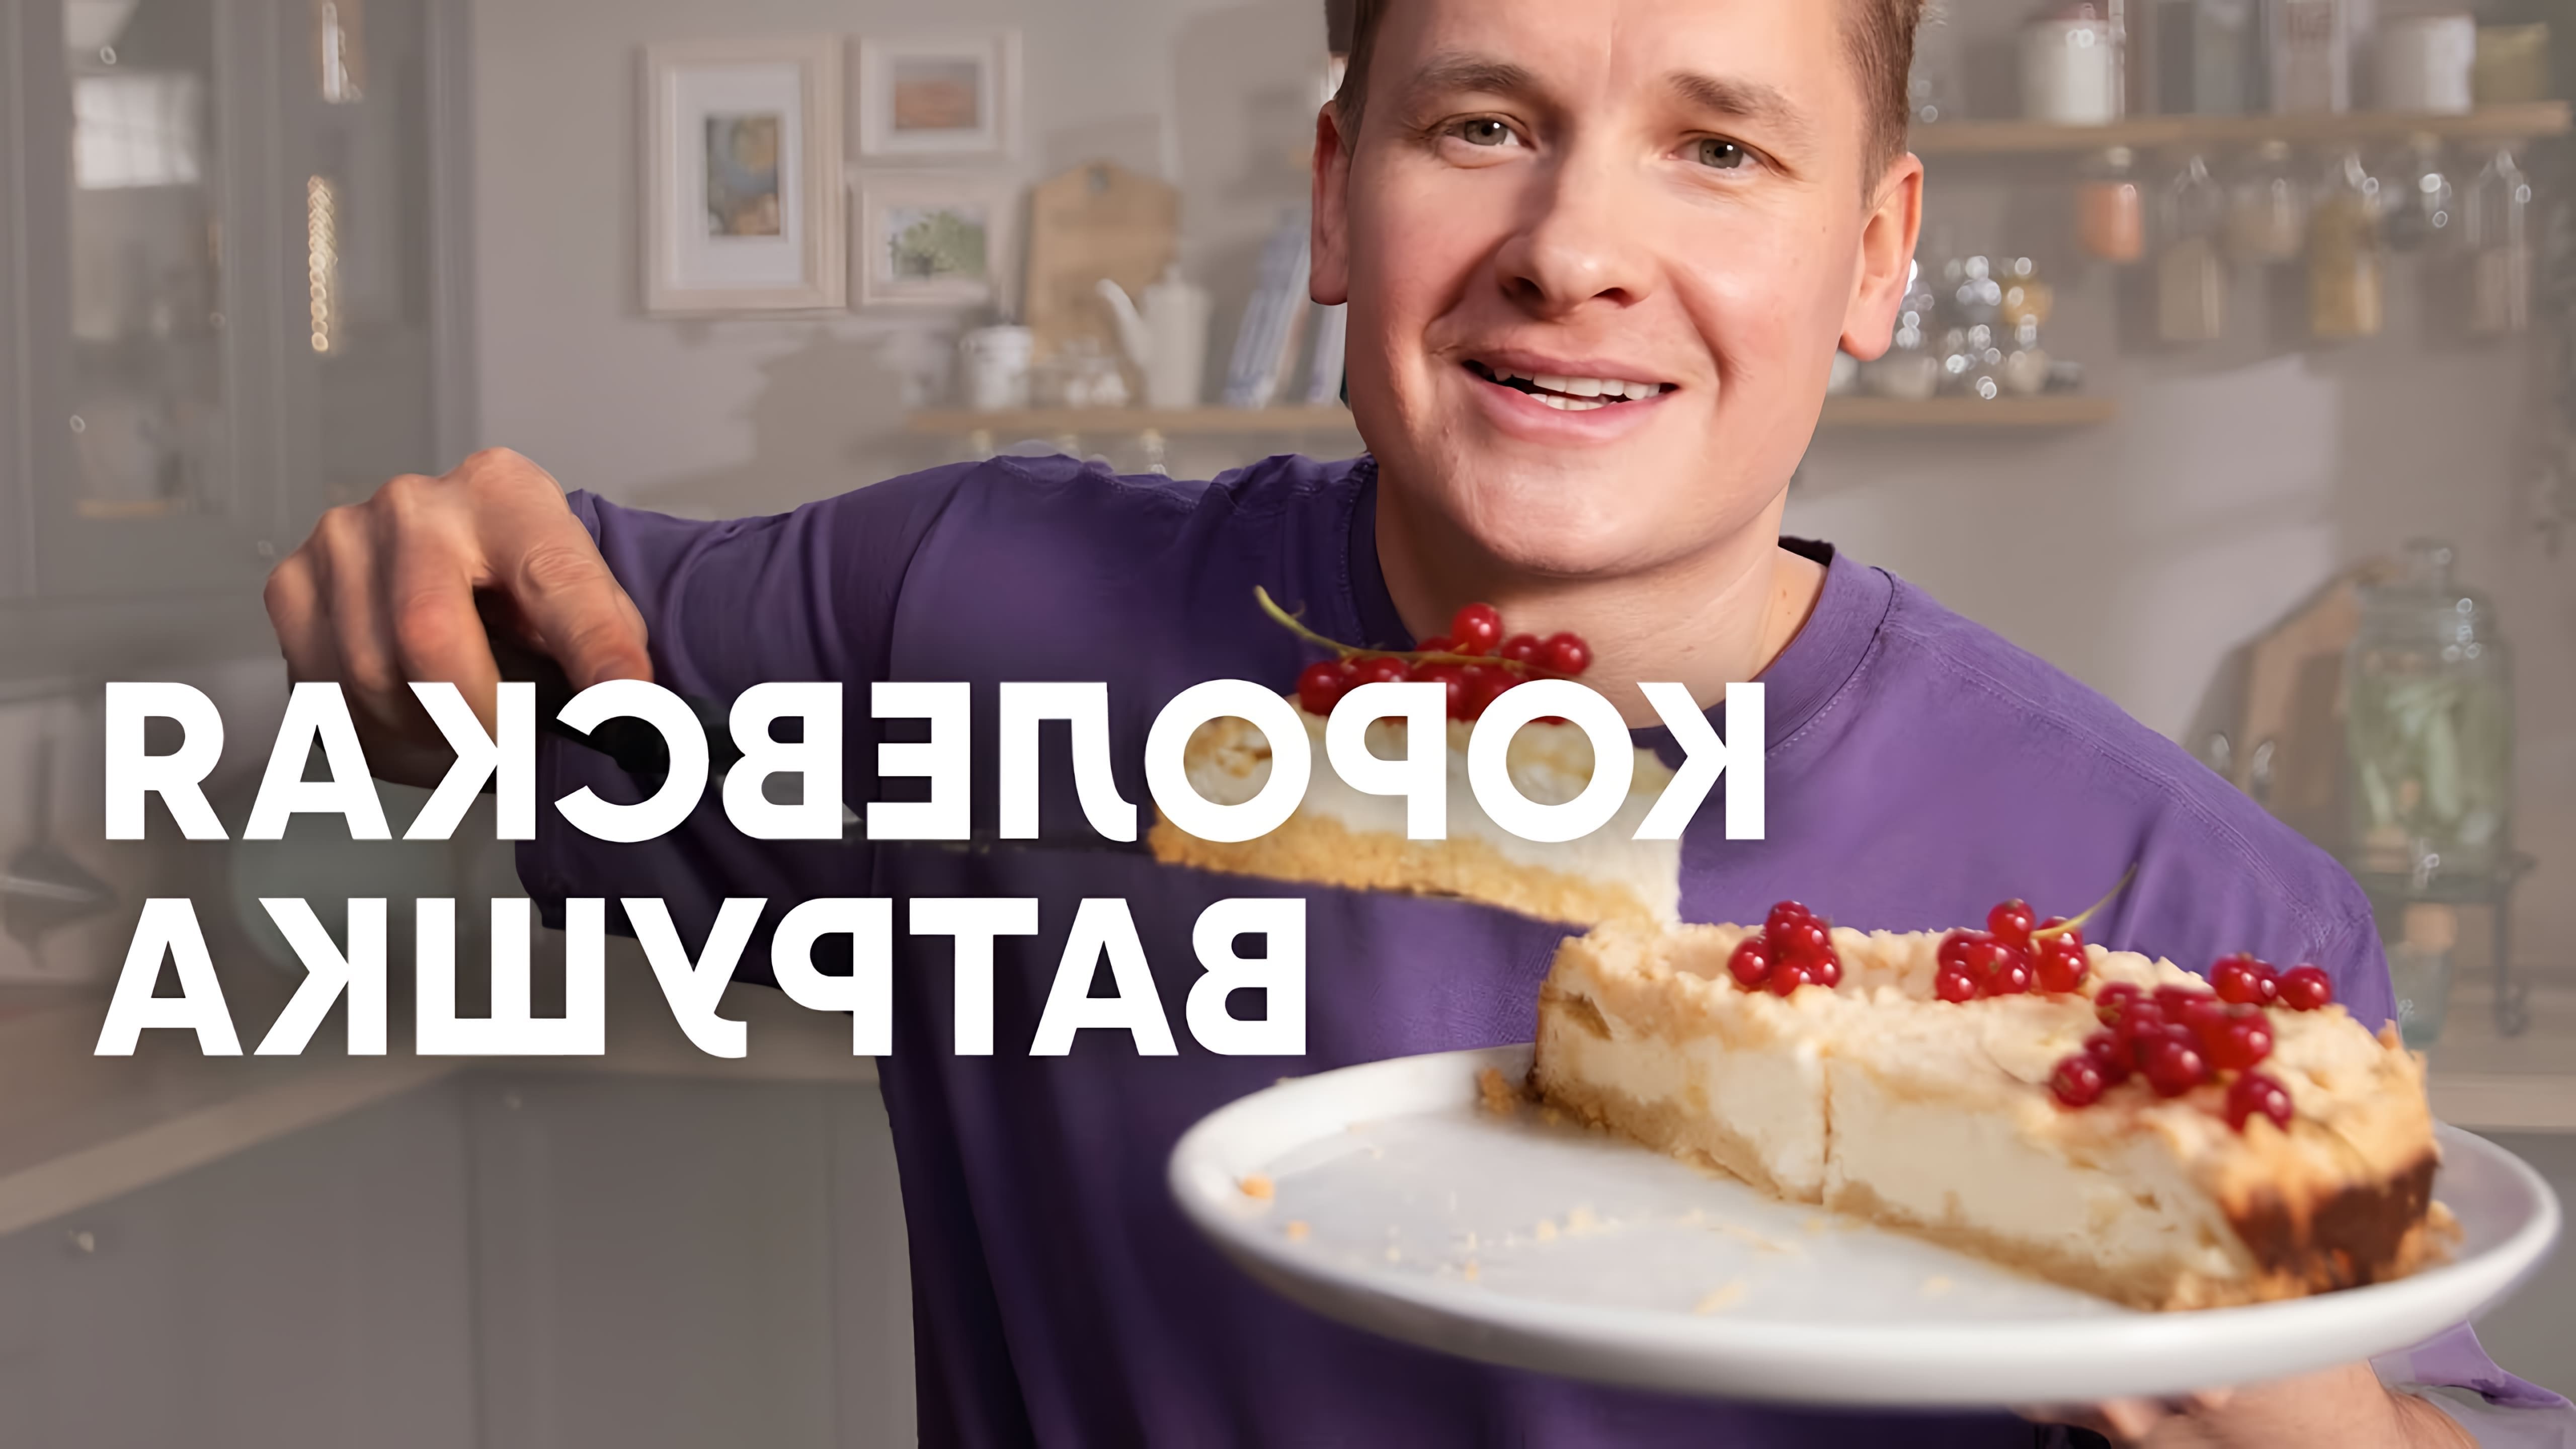 В этом видео шеф-повар Белькович показывает, как приготовить королевскую ватрушку - насыпной пирог из песочного теста со сладким творогом